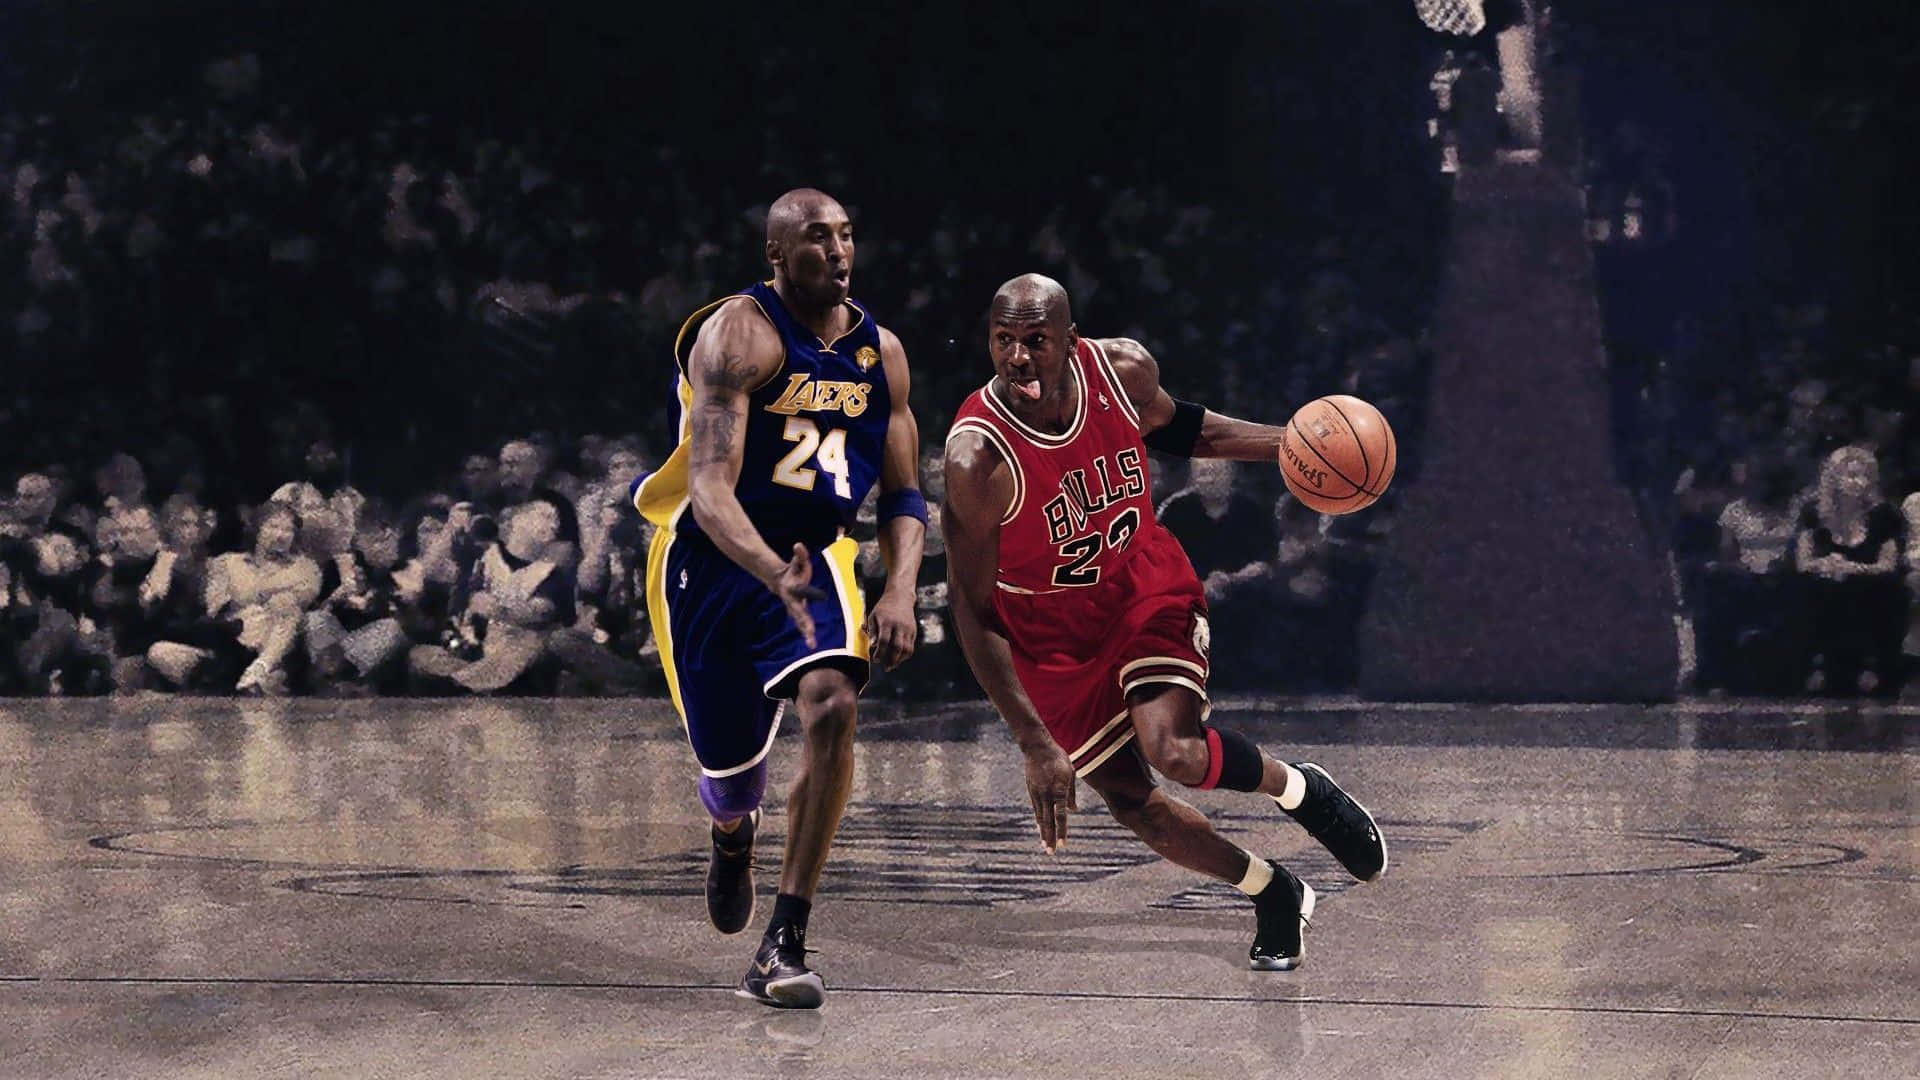 Fondode Pantalla De Michael Jordan Contra Kobe Bryant, Los Mejores Jugadores De Baloncesto.